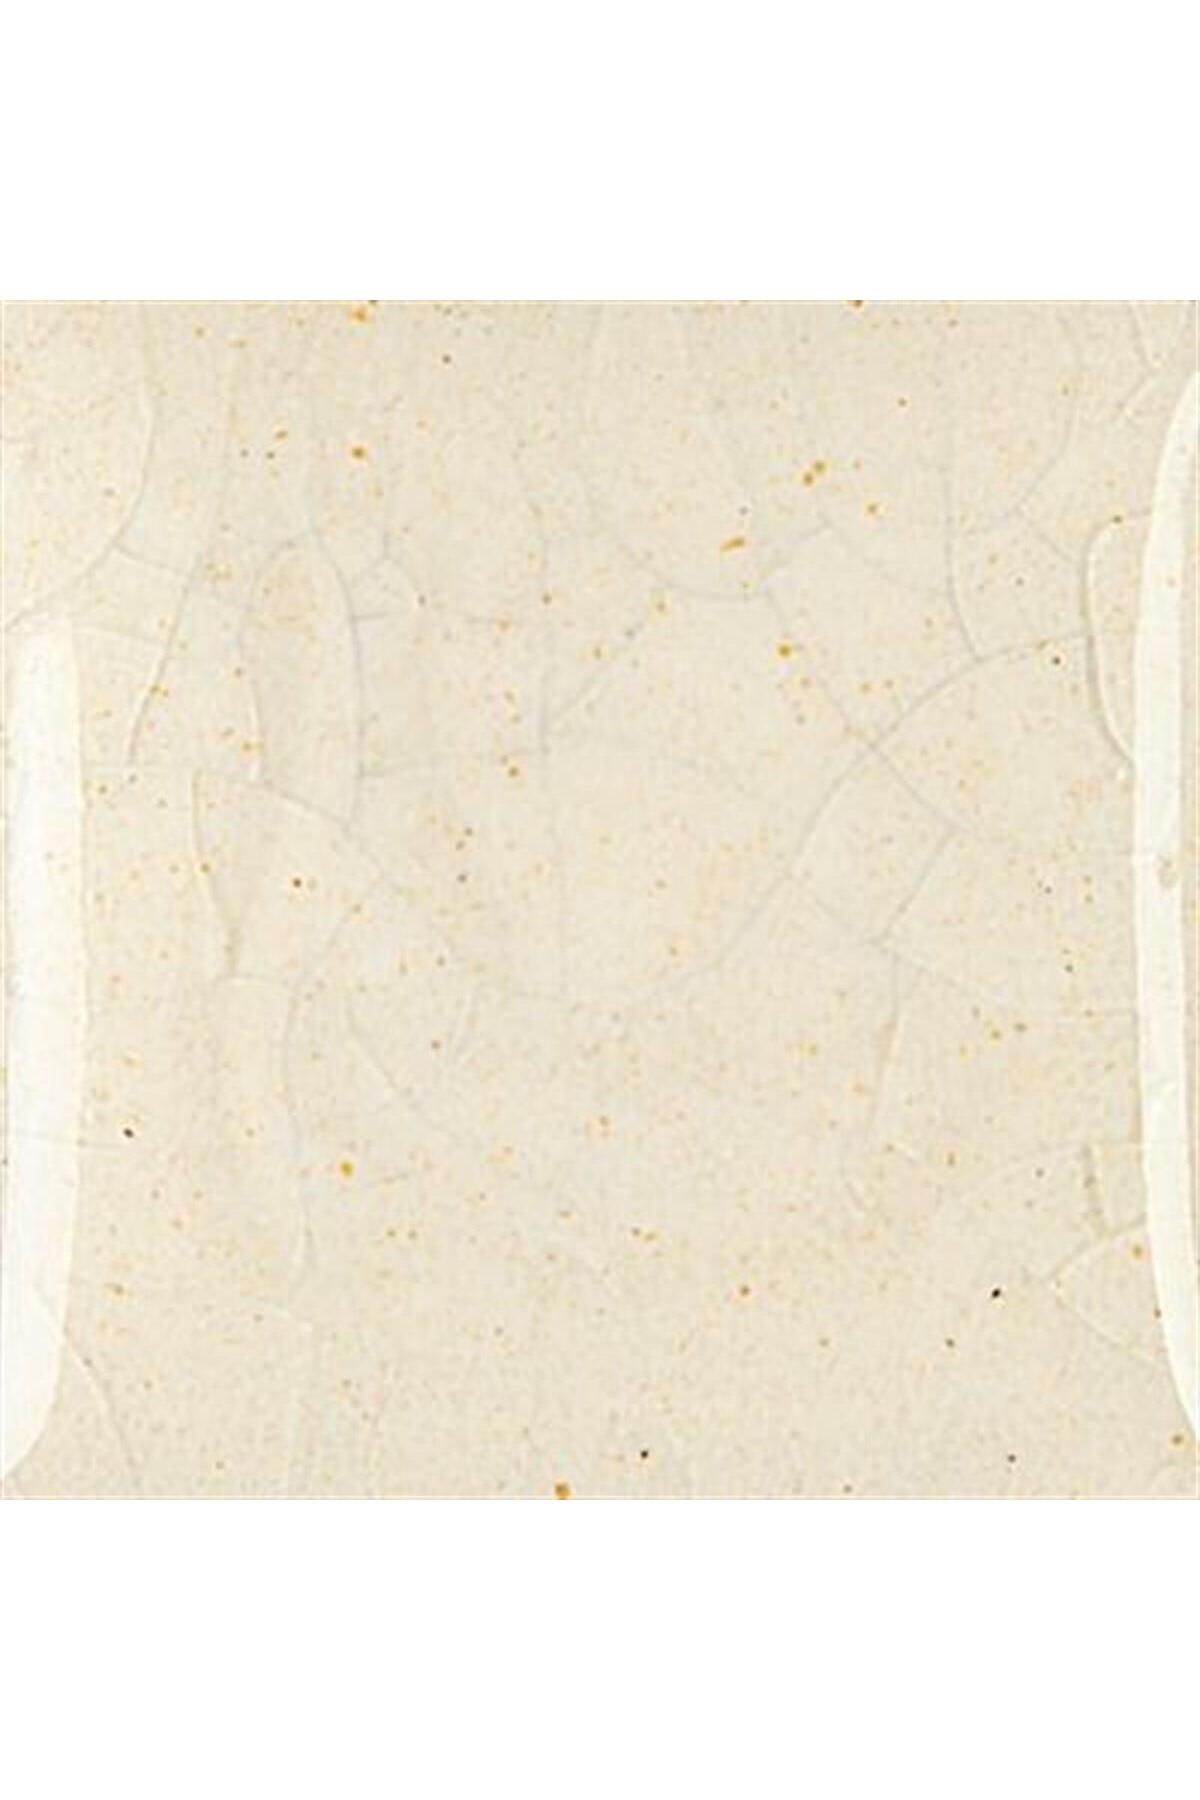 Refsan Duncan CR 800 Clear Crackles Glazes 118ml